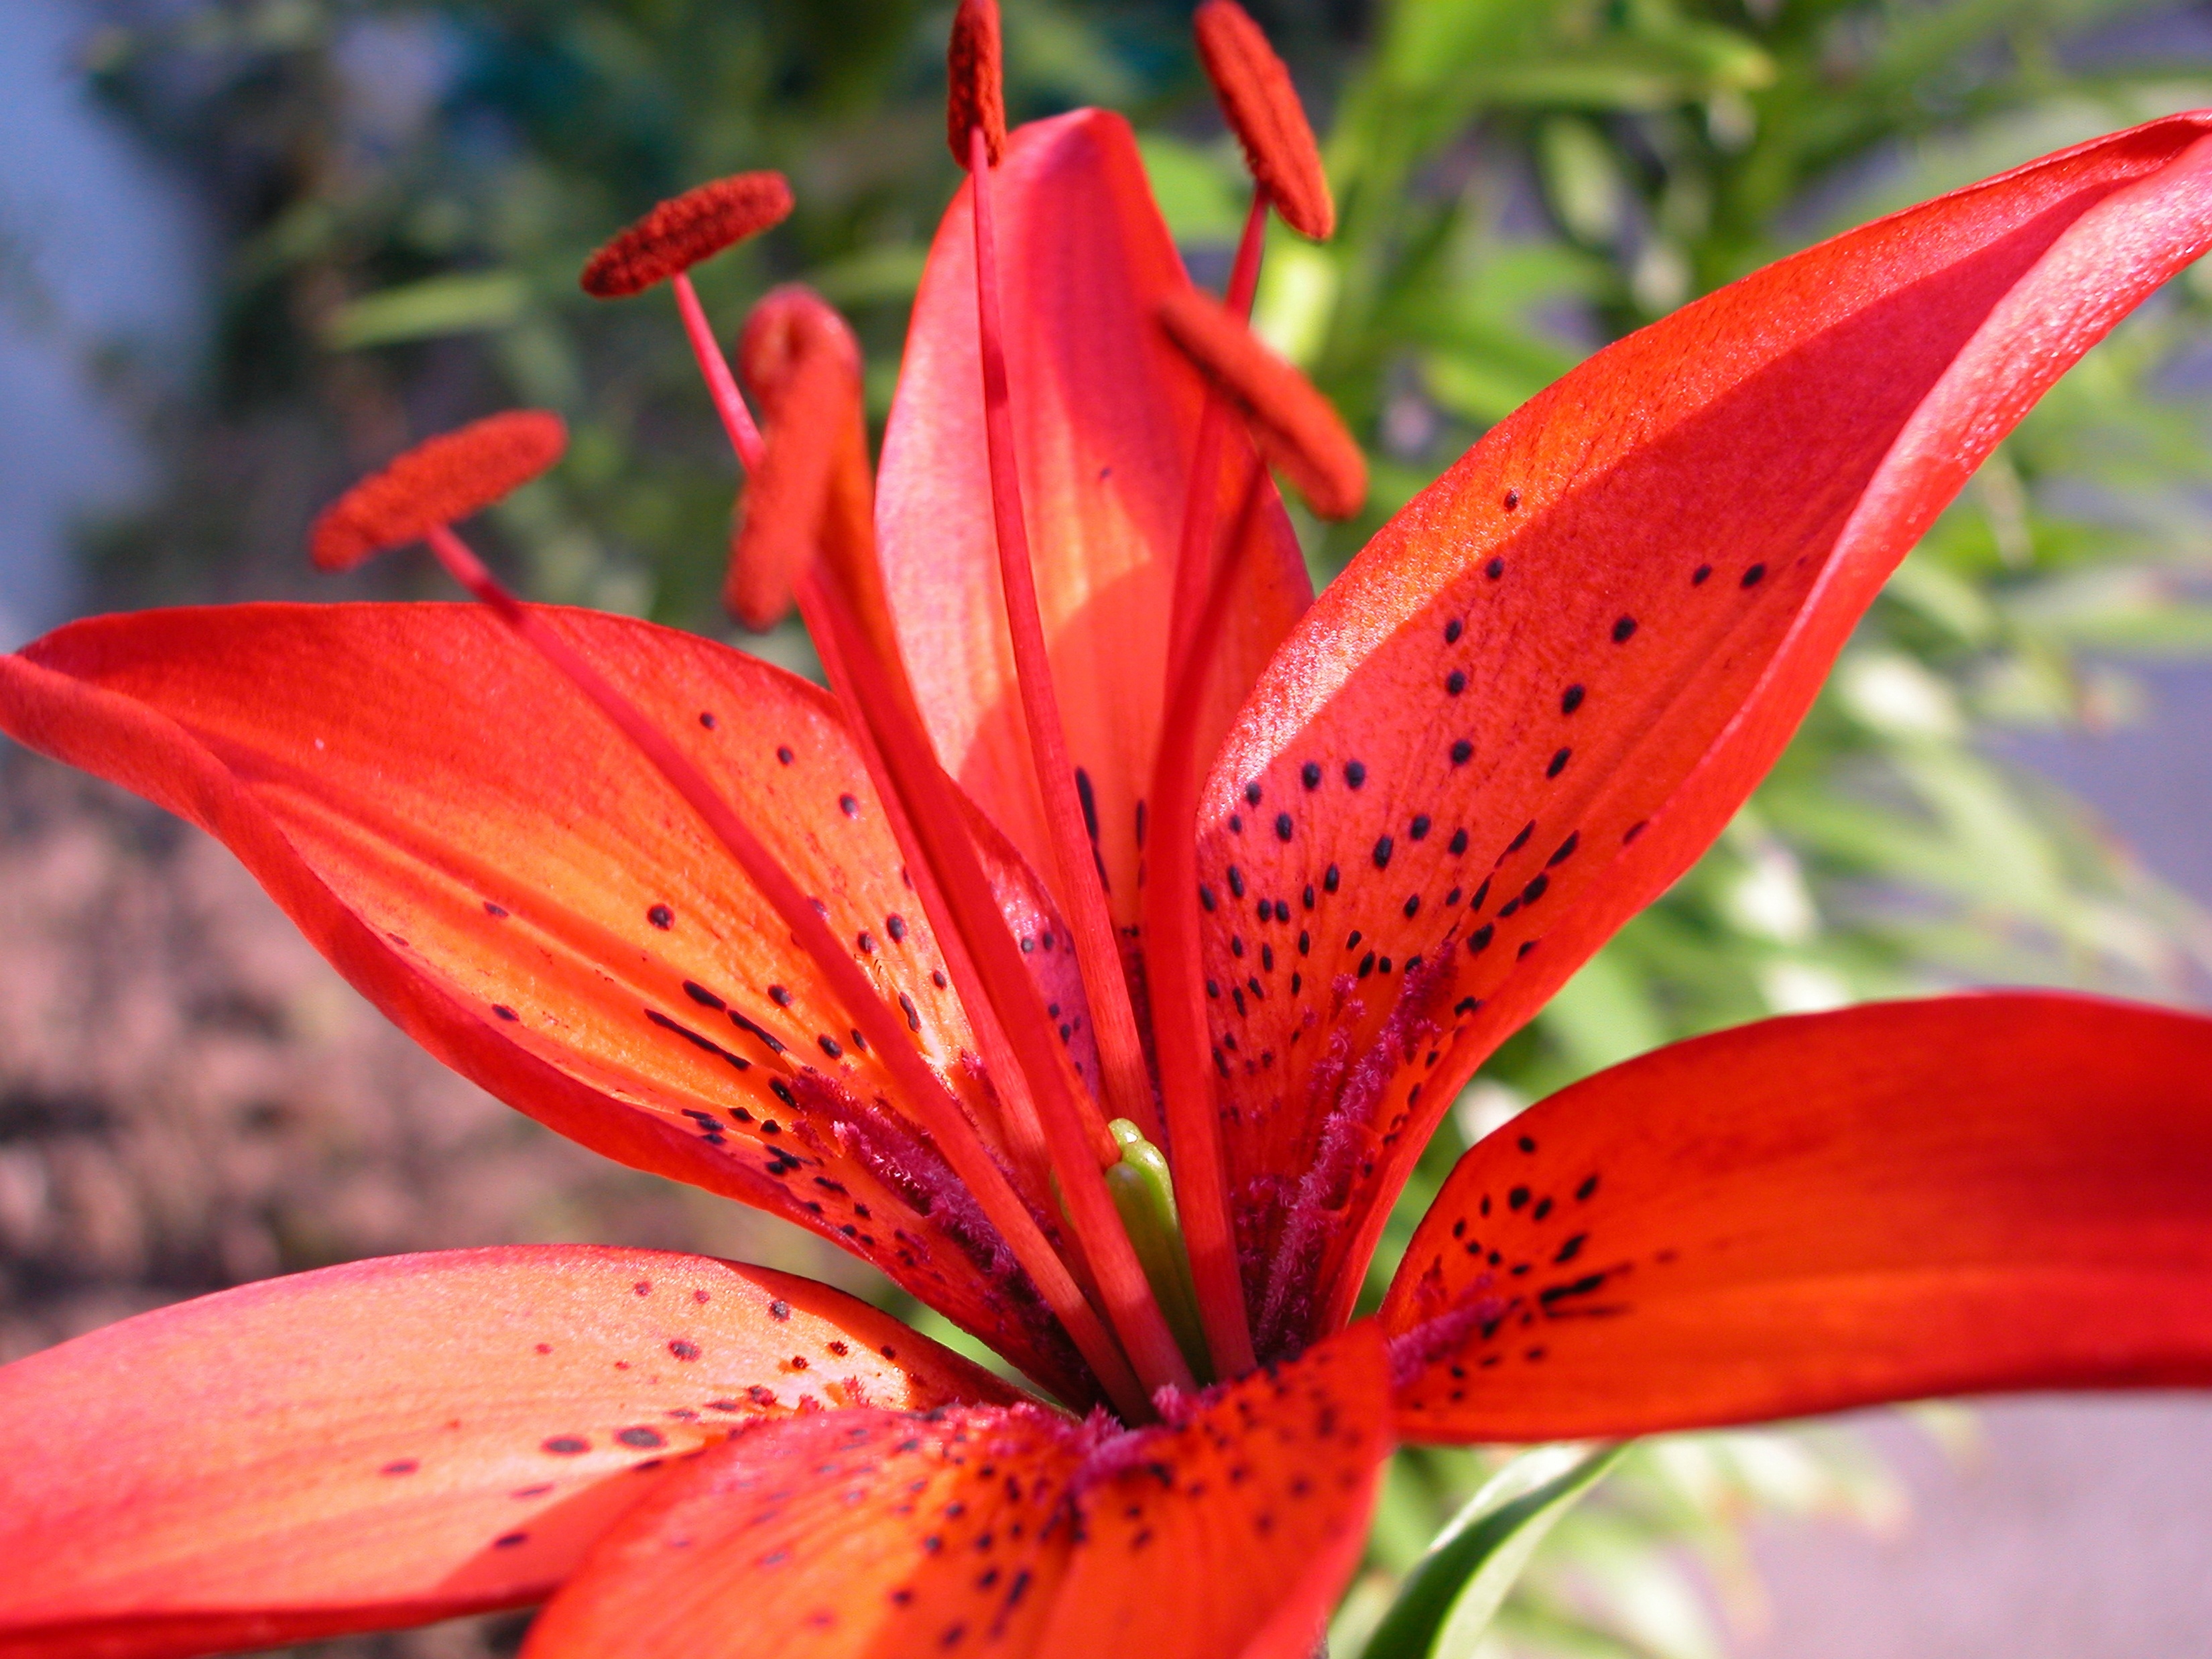 Tuyển tập hình ảnh hoa loa kèn đỏ đẹp nhất - [Kích thước hình ảnh: 3300x2475 px]